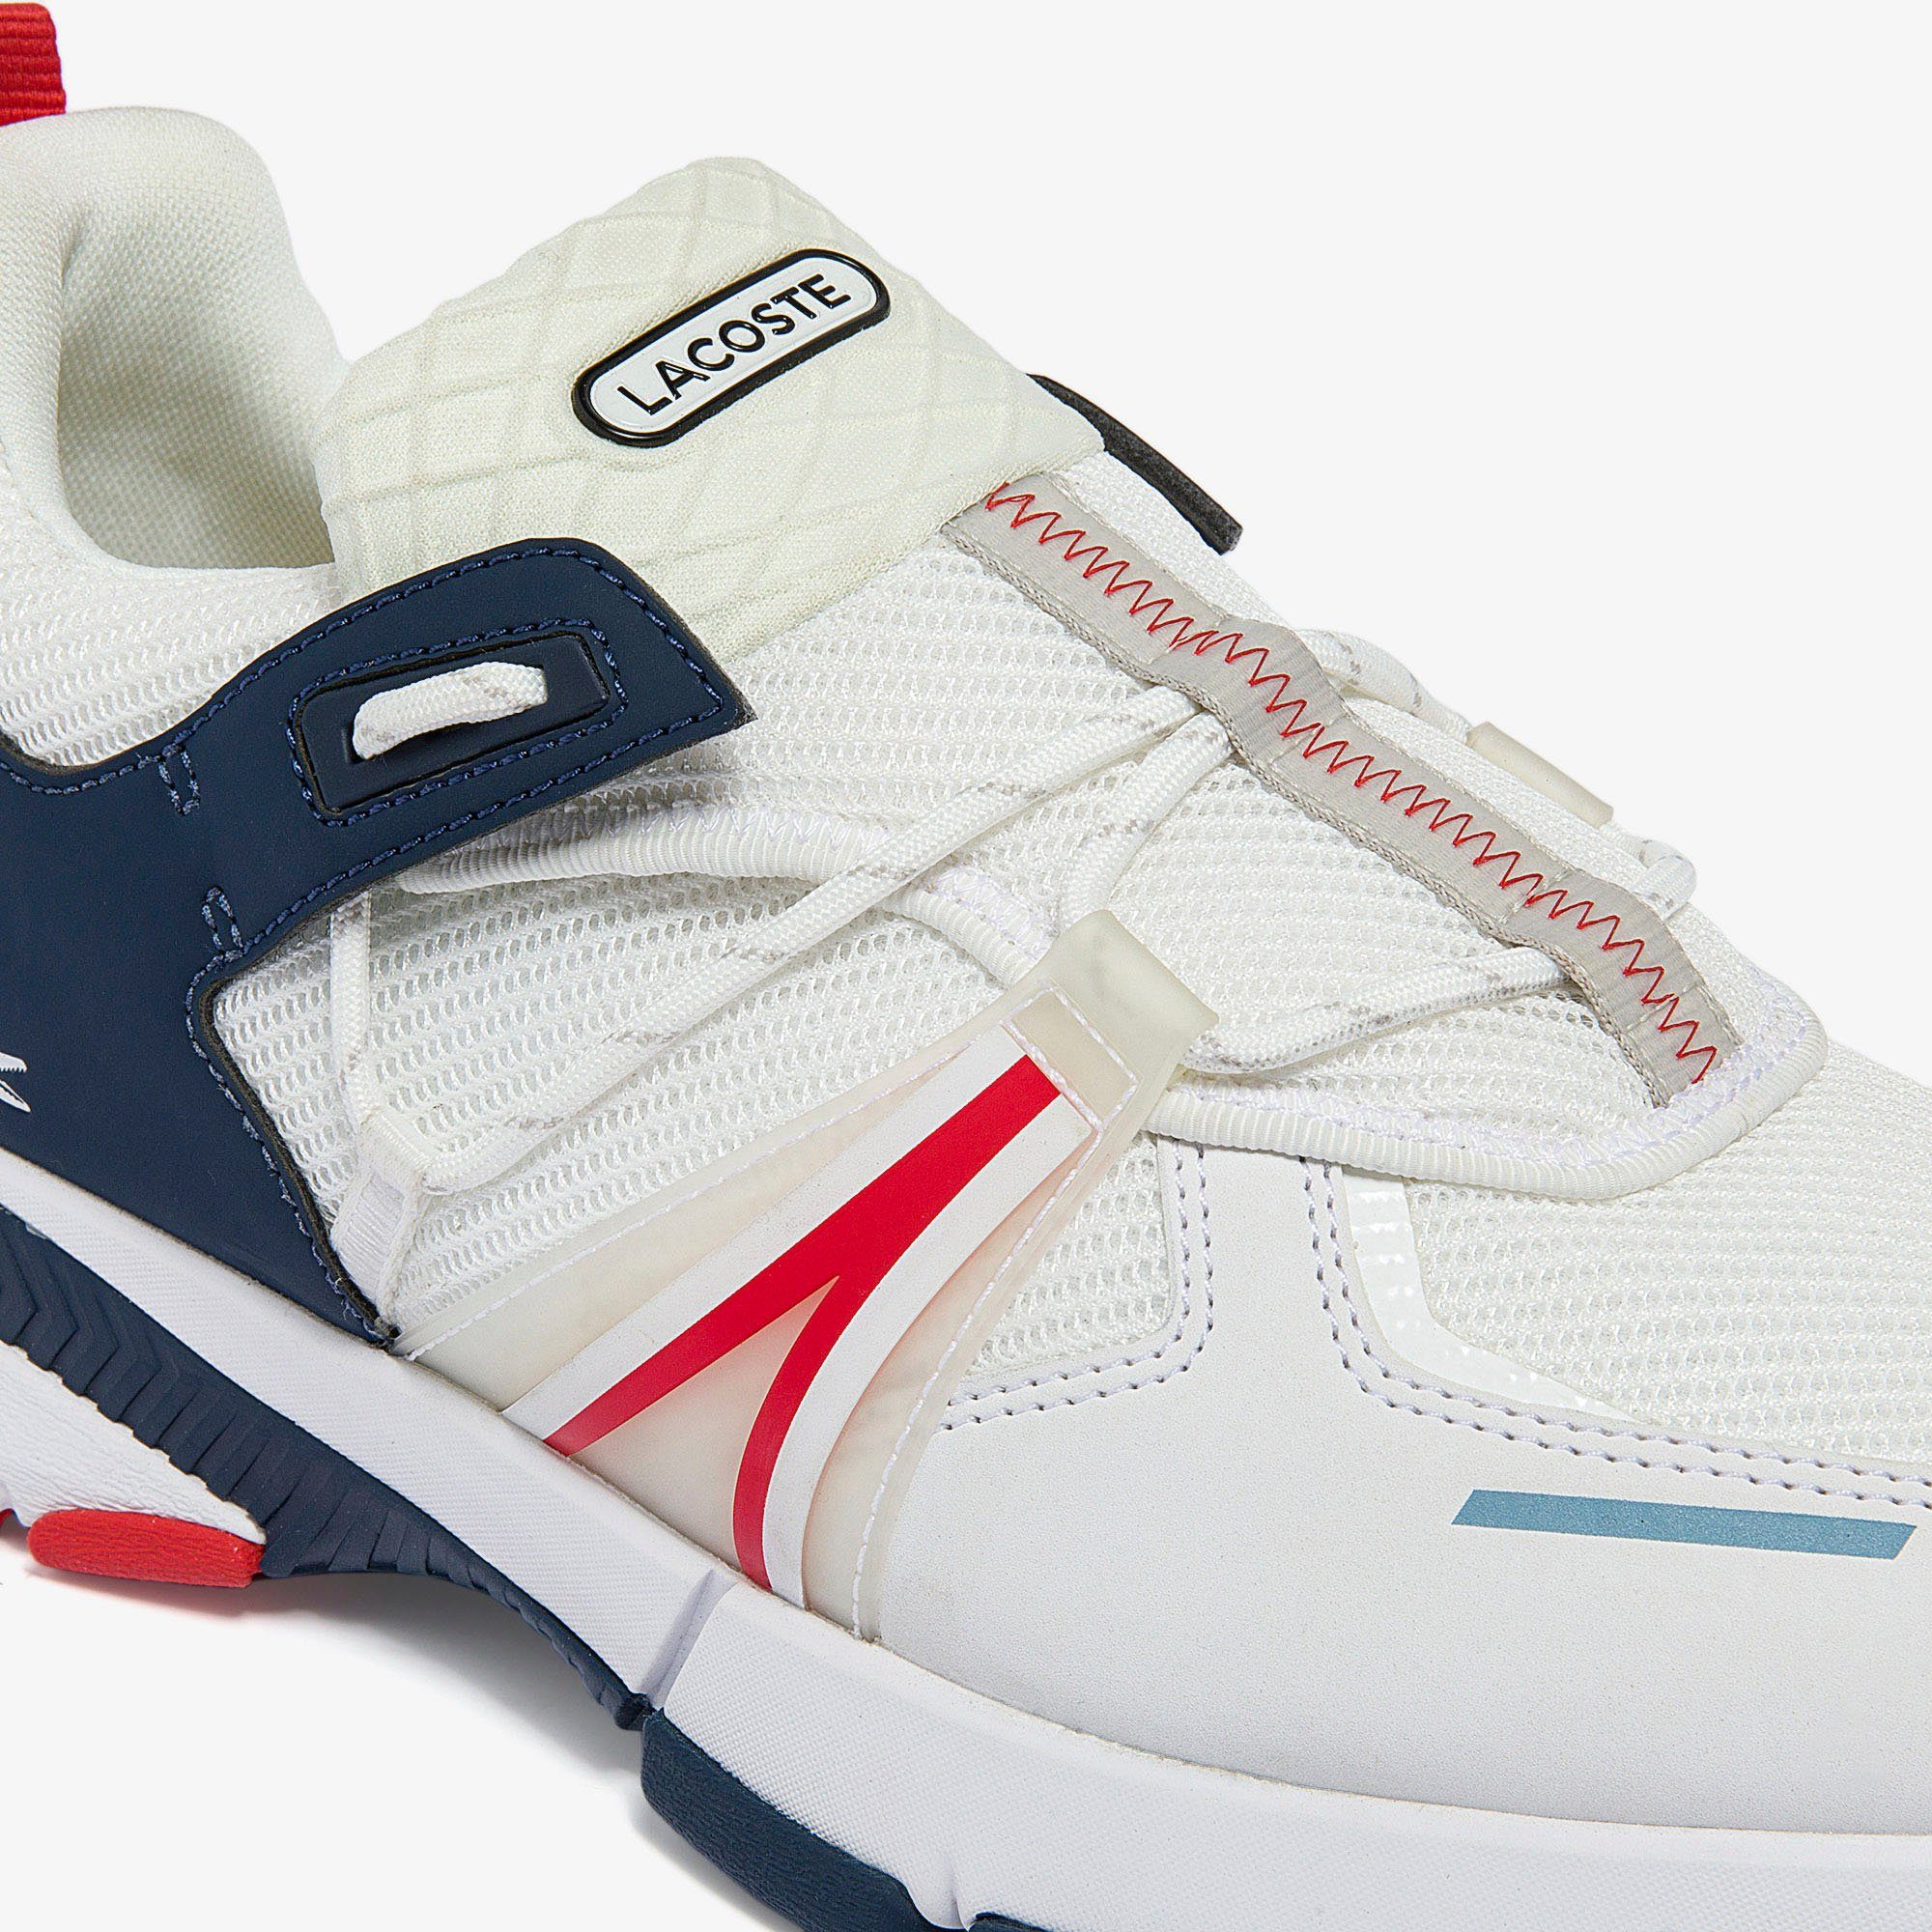 Lacoste L003 0722 SMA weiß-navy Sneaker 1